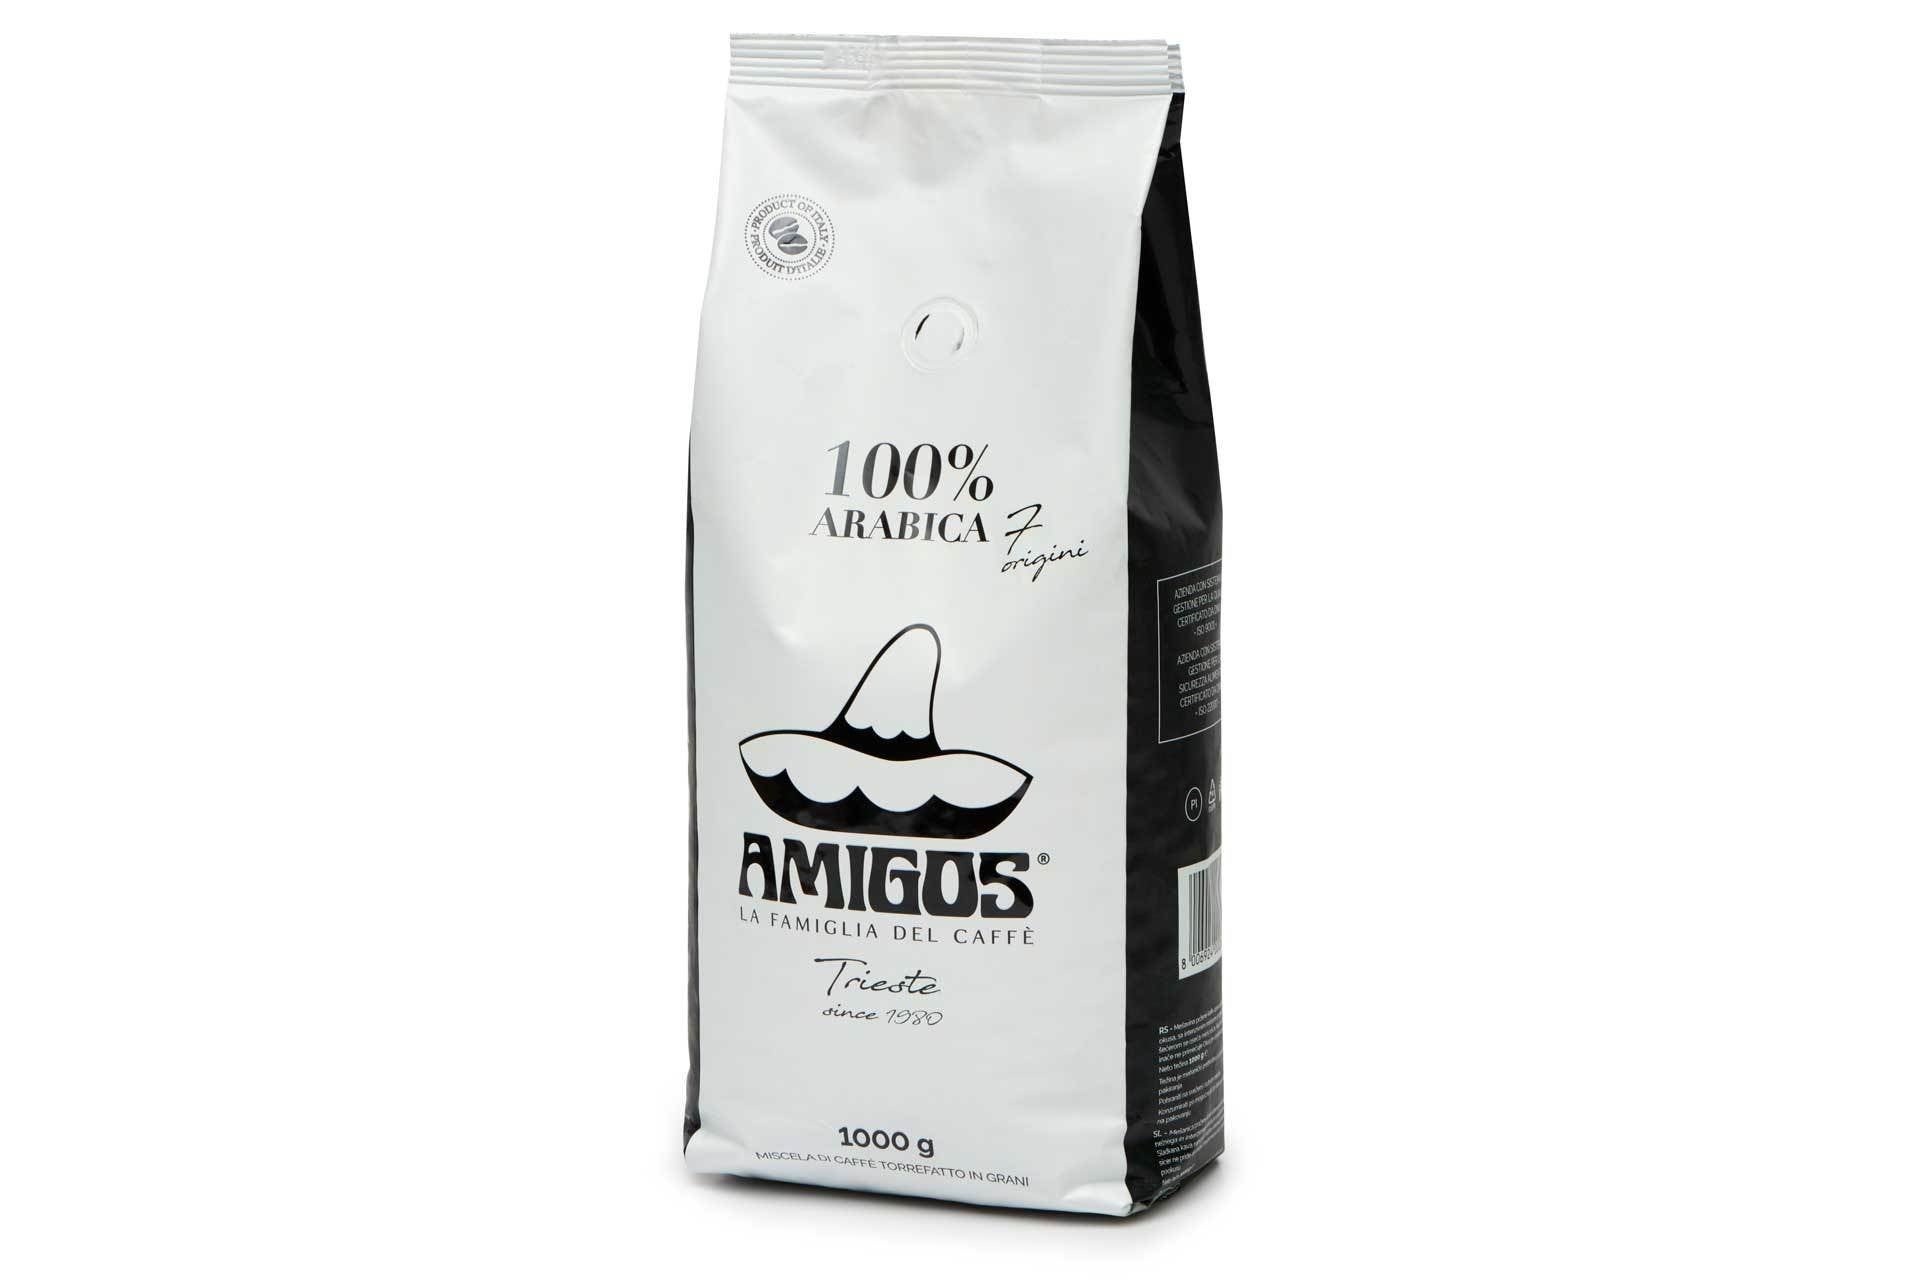 7 Origini 100% arabica coffee beans